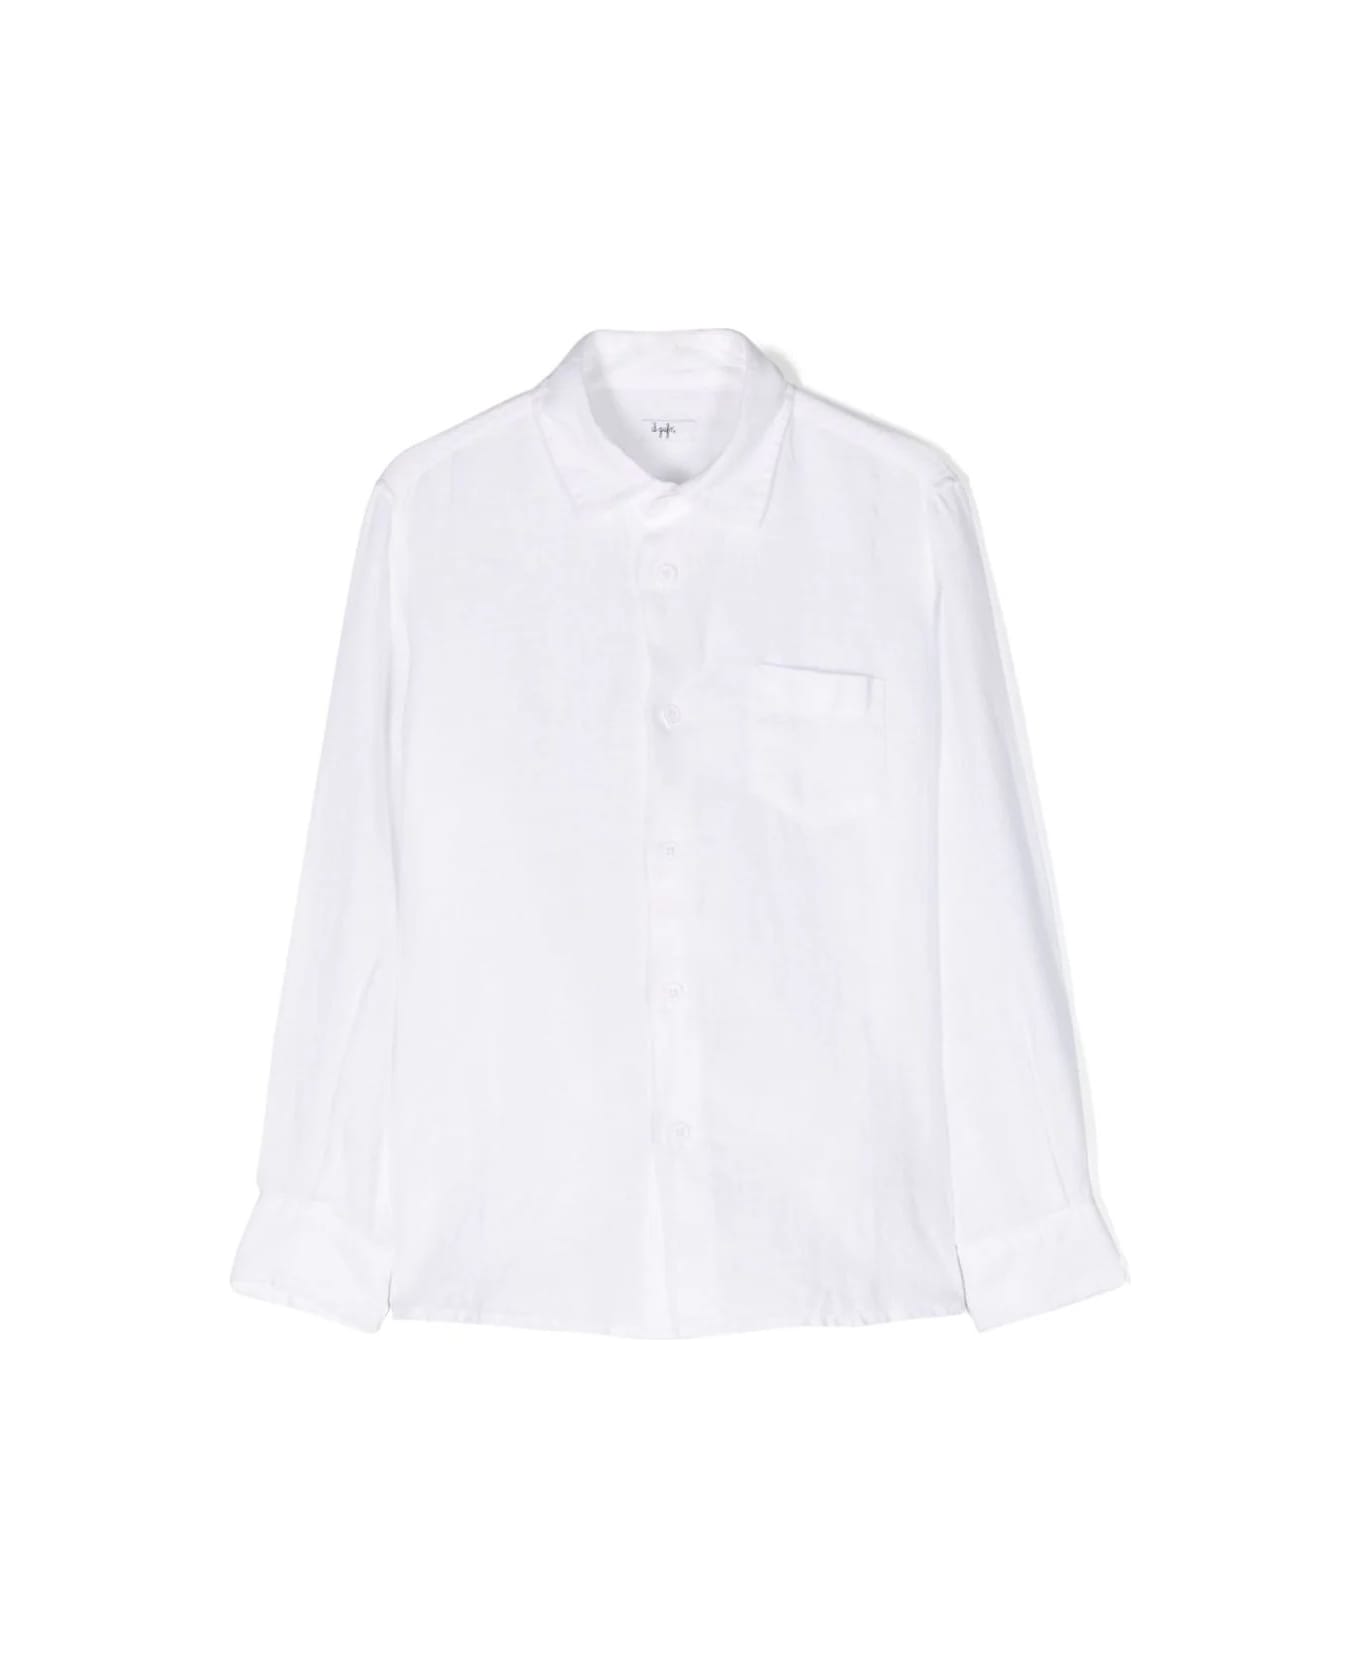 Il Gufo White Linen Shirt With Pocket - White